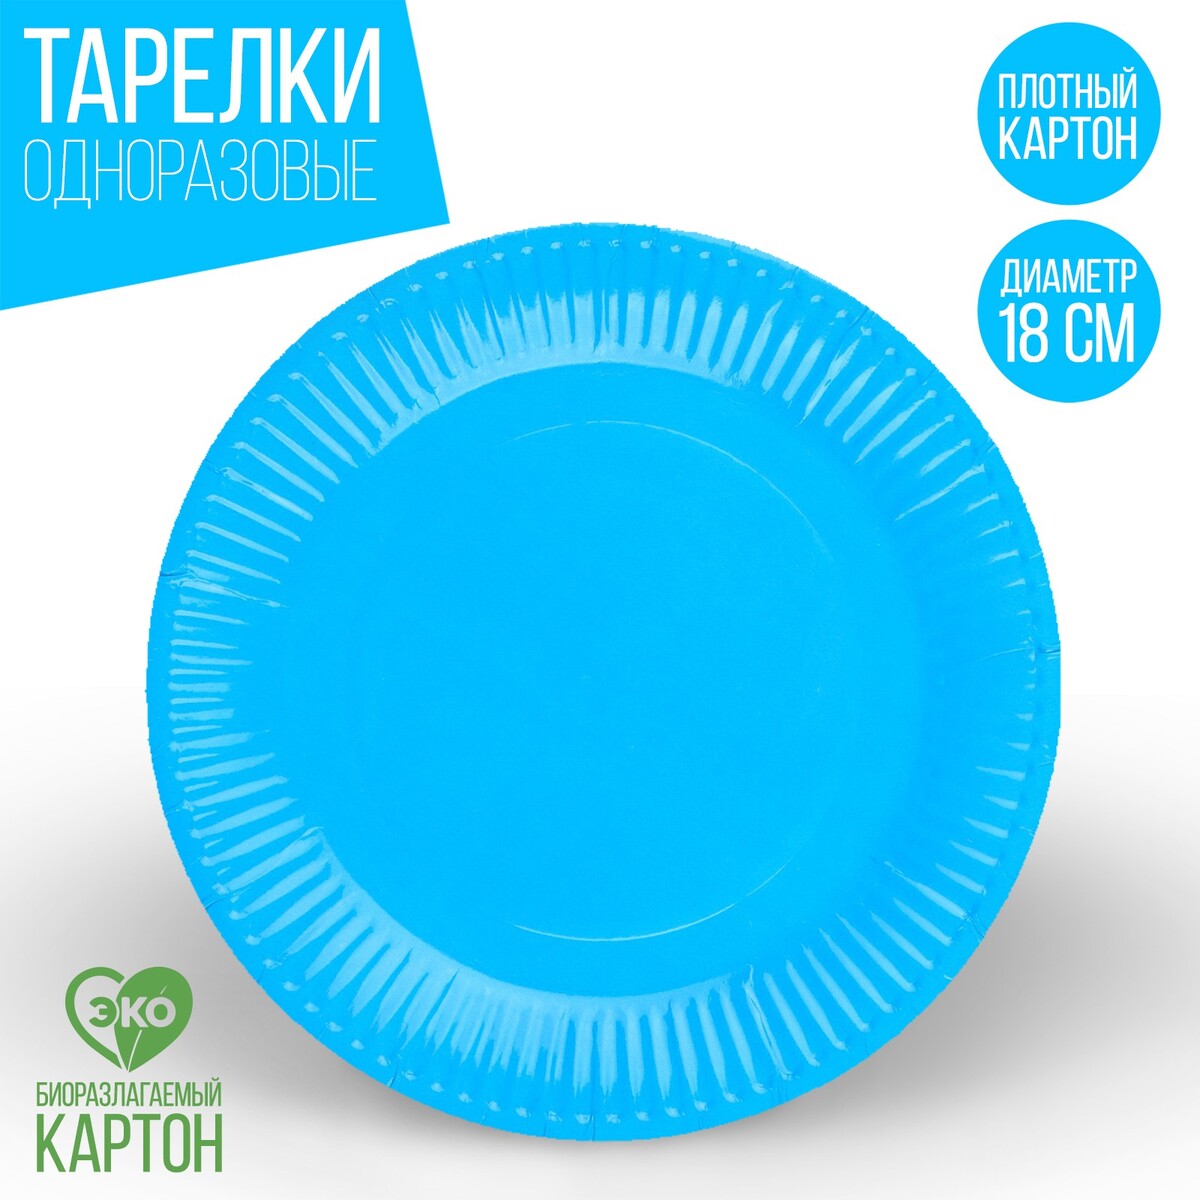 Тарелка одноразовая бумажная однотонная, голубой цвет 18 см, набор 10 штук тарелка одноразовая бумажная однотонная голубой 18 см набор 10 штук